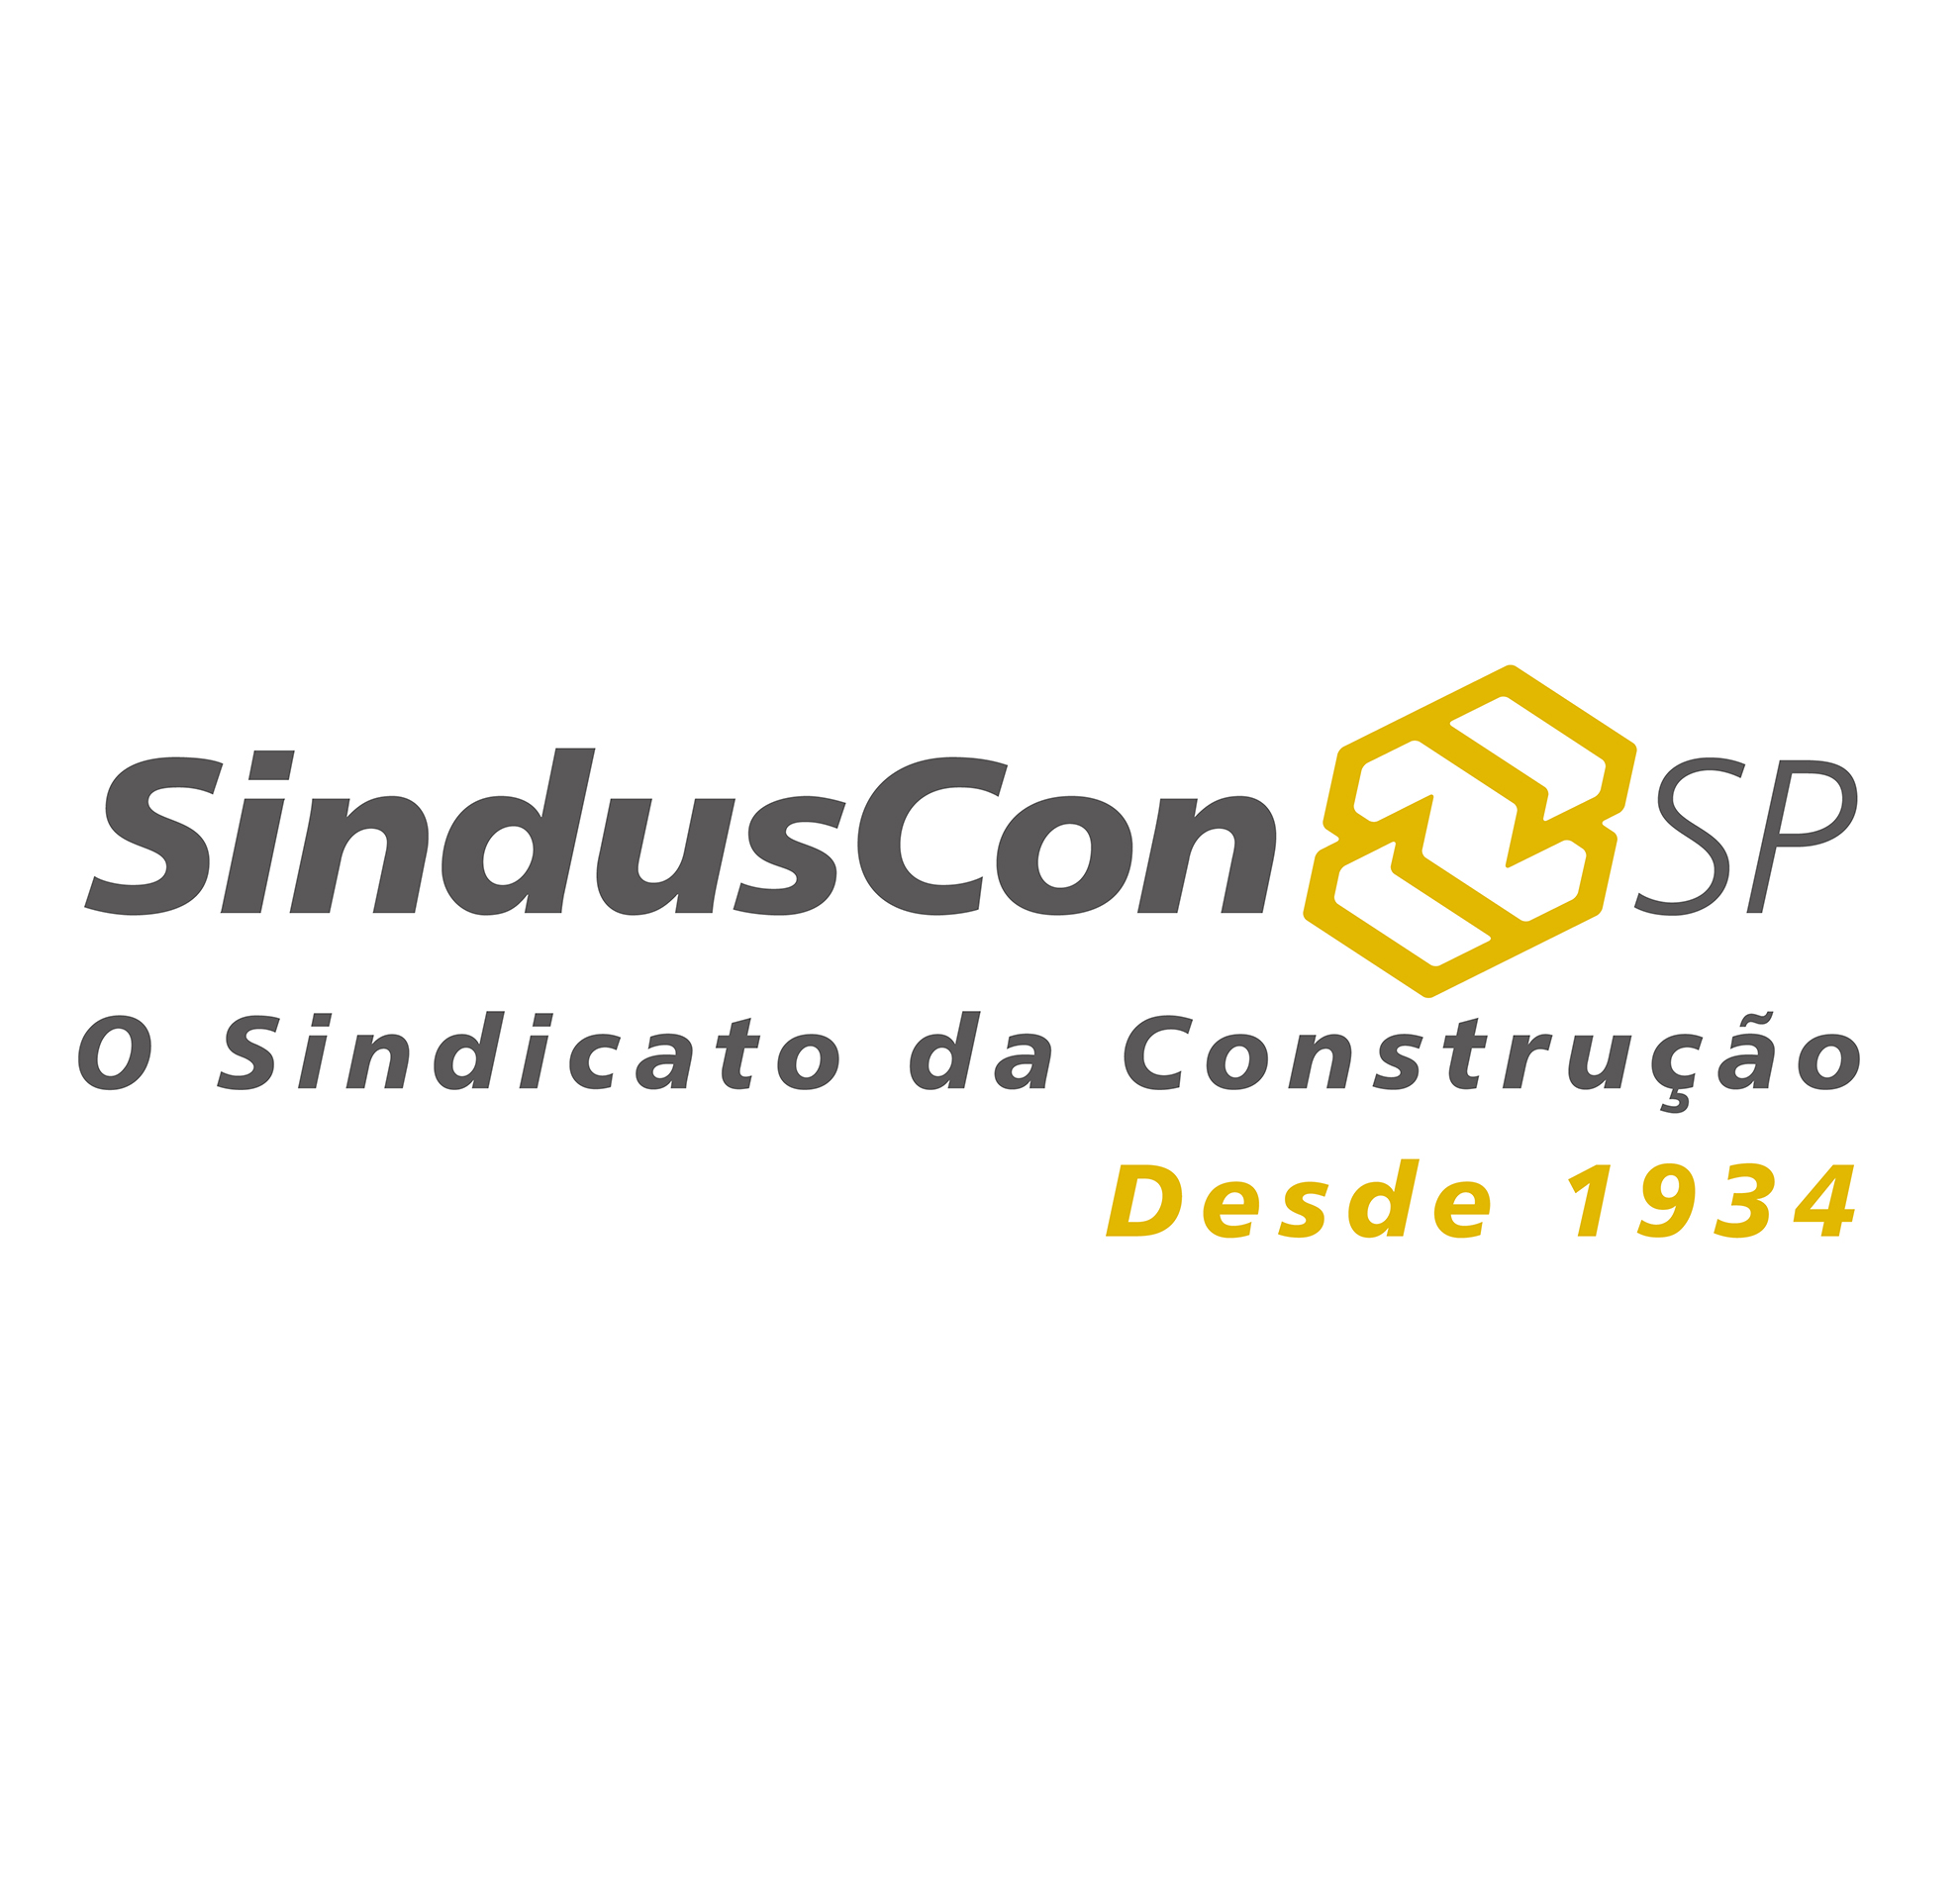 SindusCon-SP tem nova diretoria eleita para biÃªnio 2019-2020 - CBIC â€“  CÃ¢mara Brasileira da Industria da ConstruÃ§Ã£o